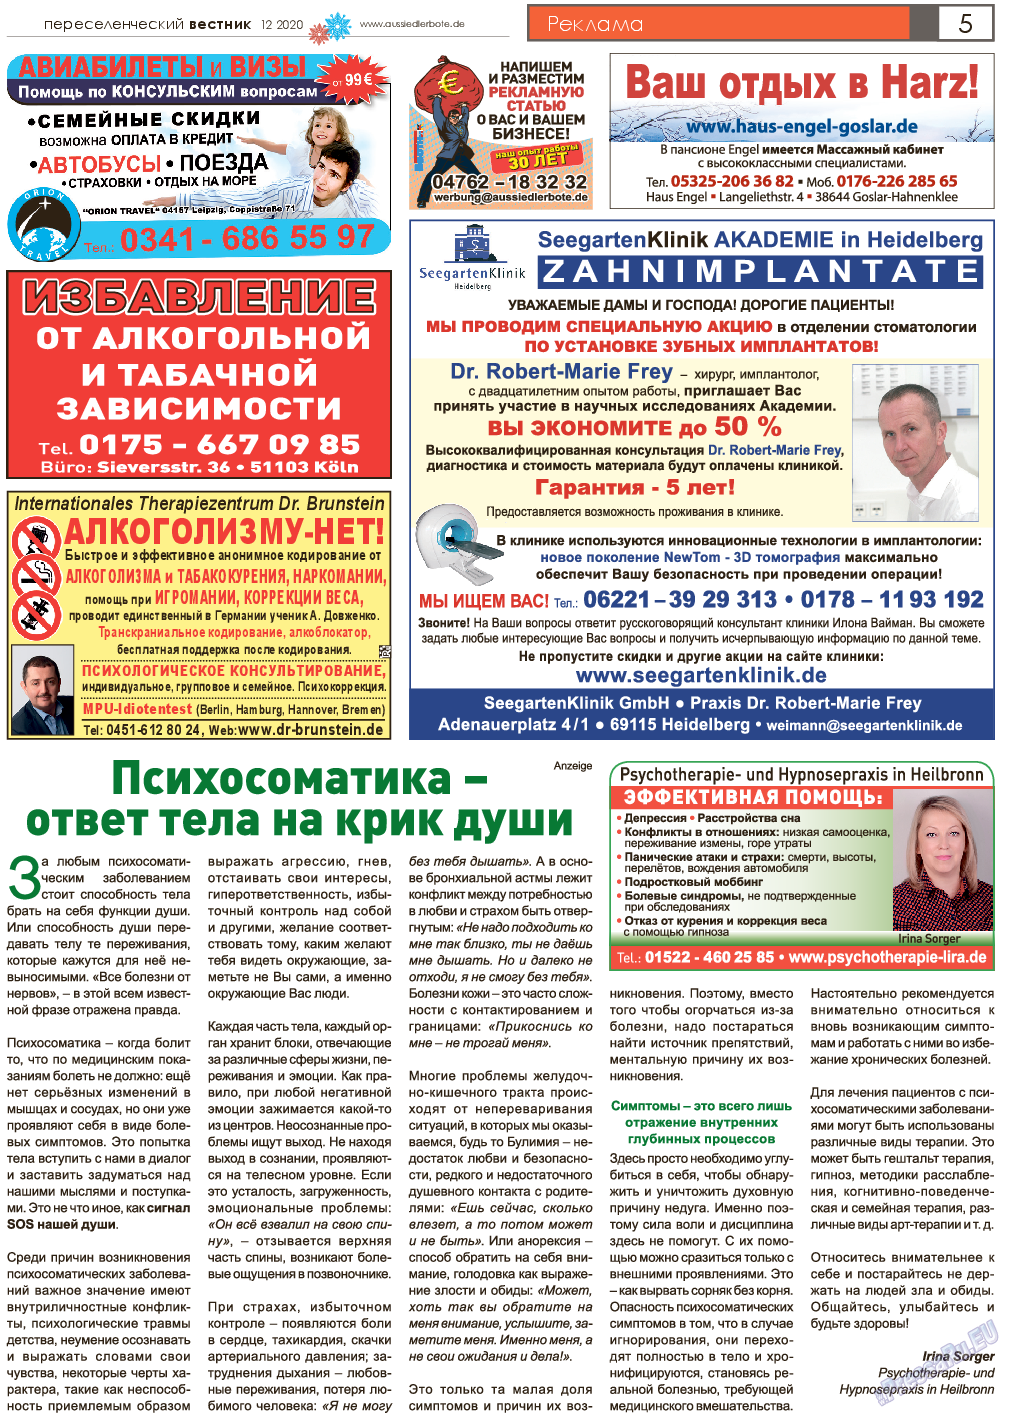 Переселенческий вестник, газета. 2020 №12 стр.5